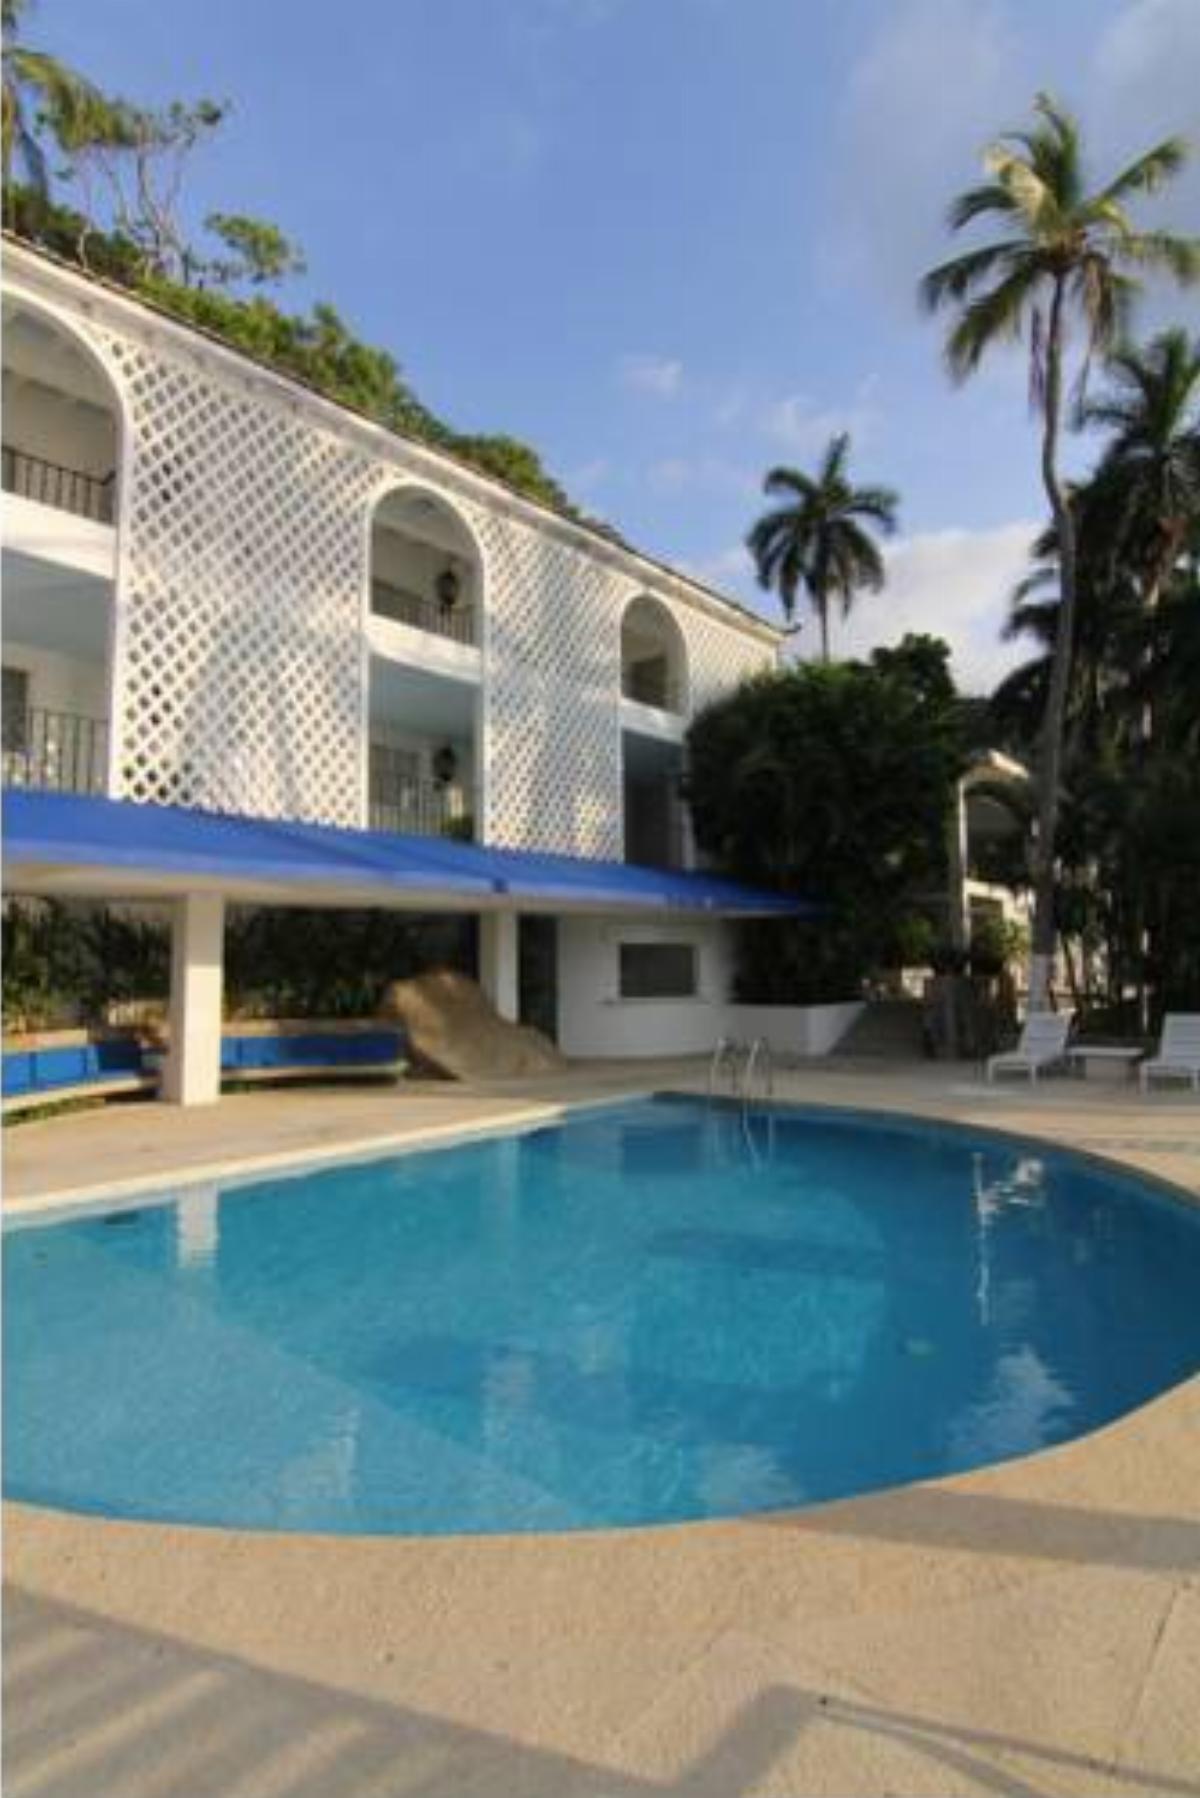 Casas y Villas Real Estate - Casa Aldila Hotel Acapulco Mexico